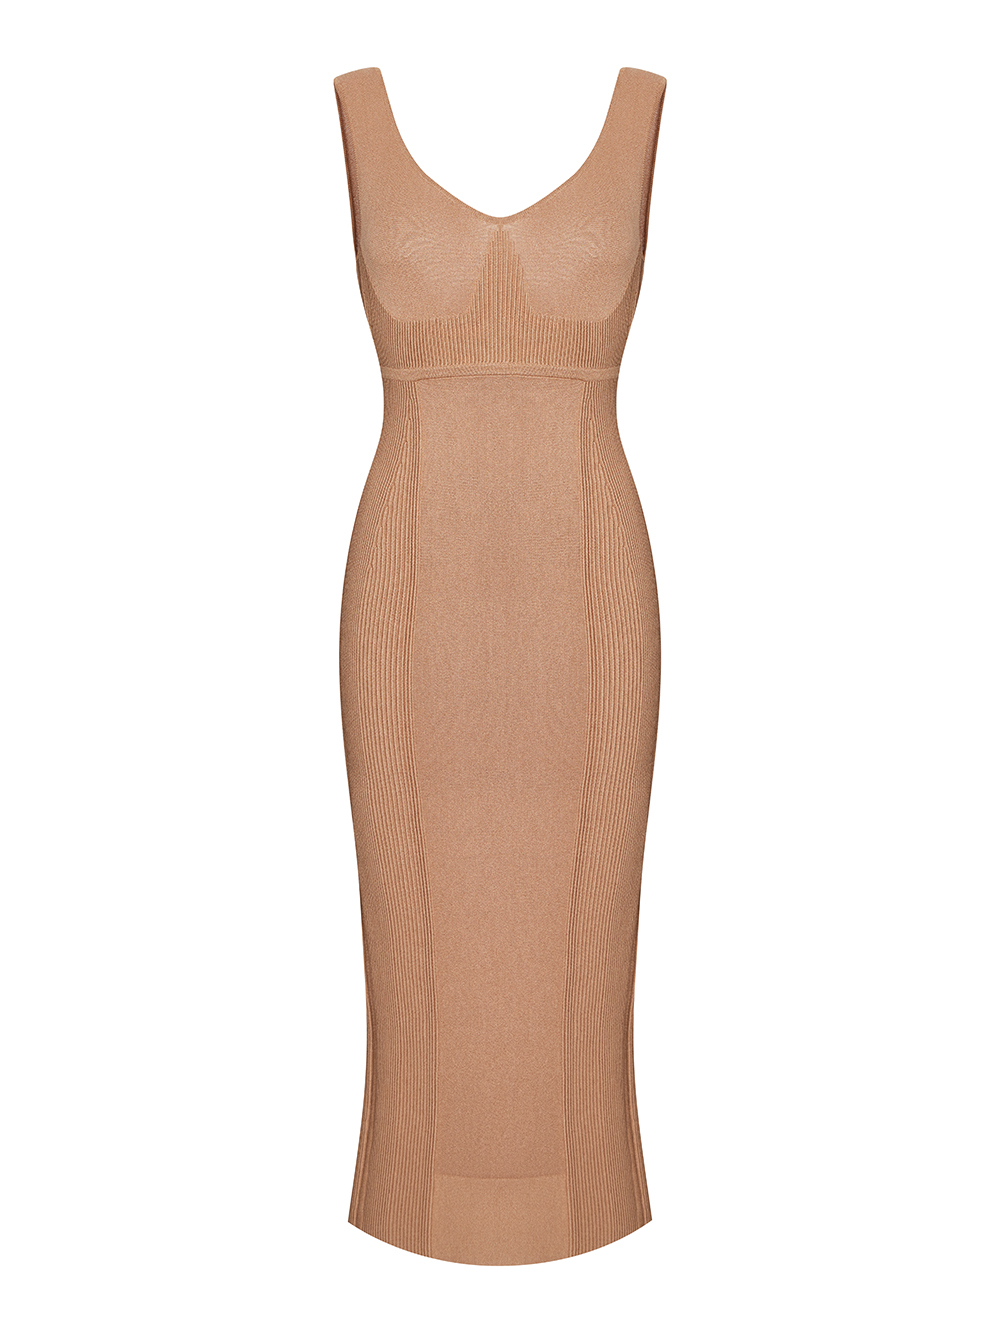 Женское платье светло-бежевого цвета из шелка и вискозы - фото 1